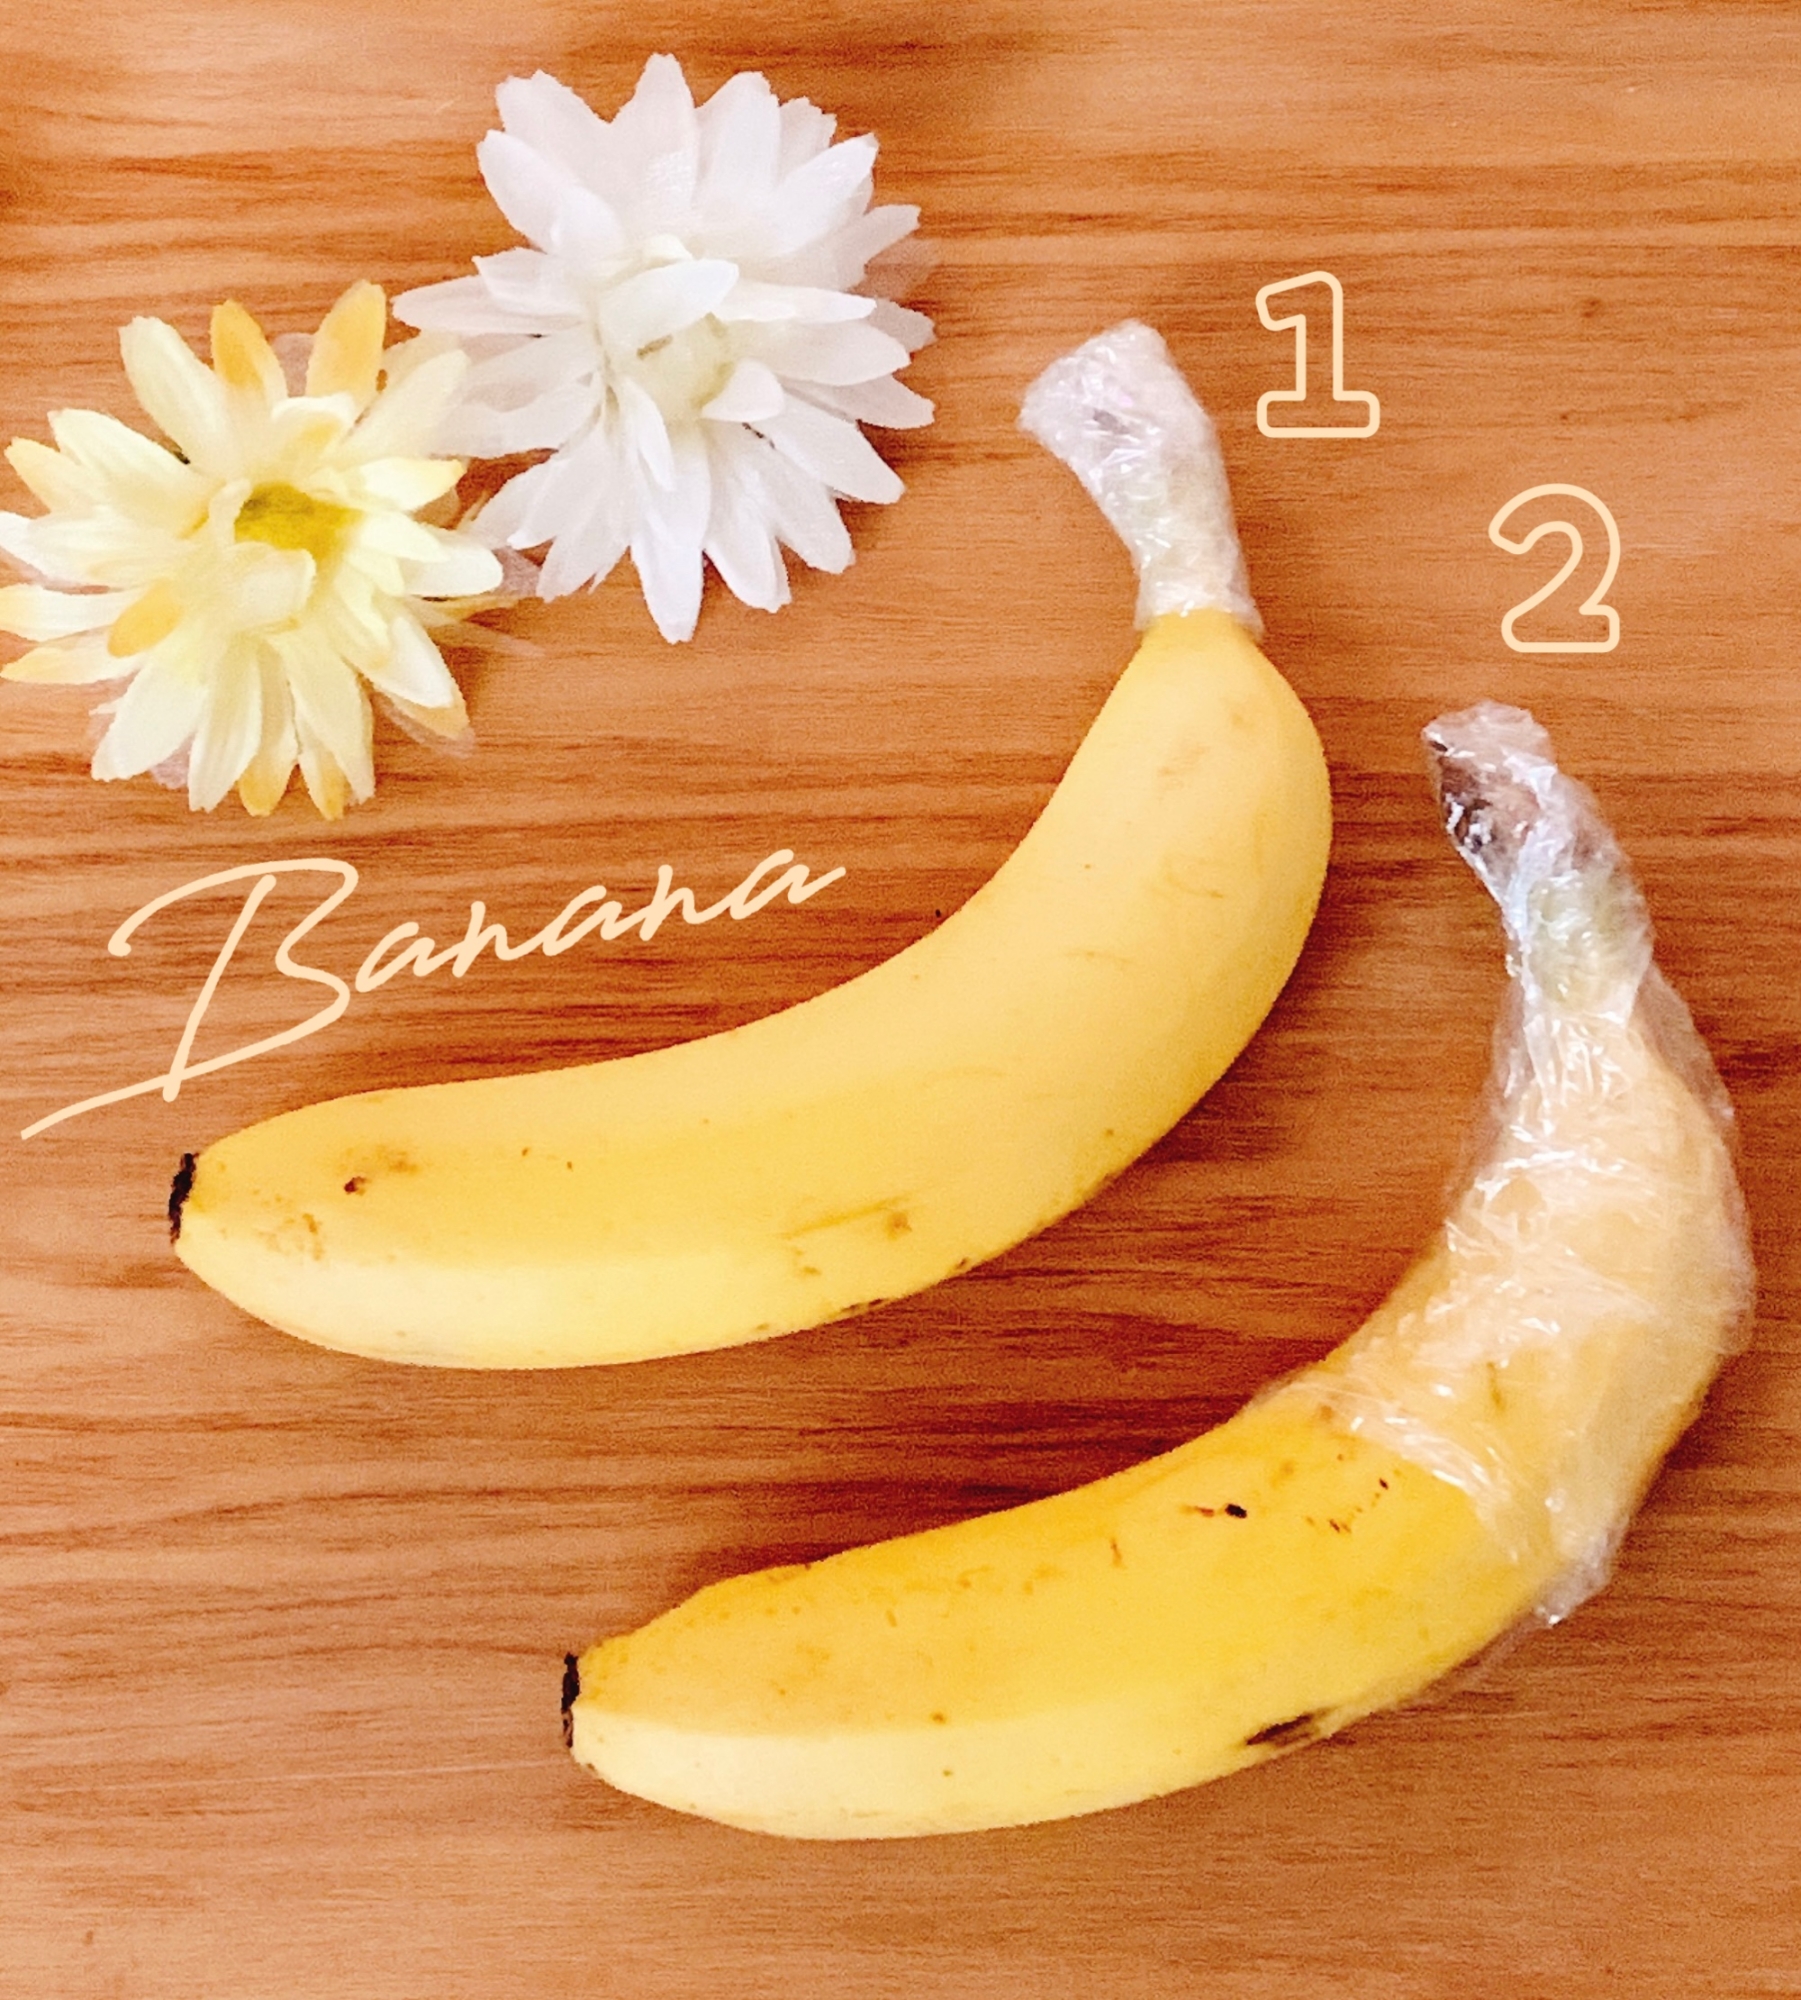 ラップで節約♪バナナの長持ち保存 2種